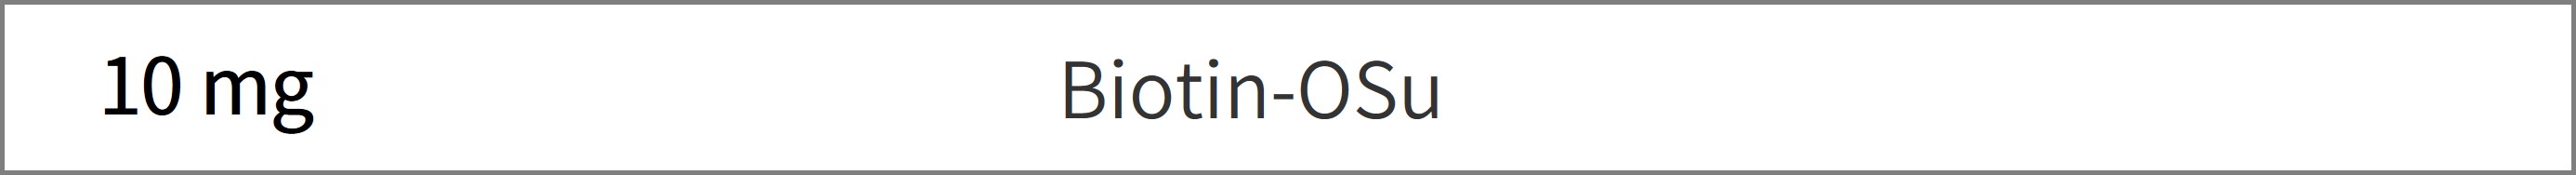 Biotin-Osu试剂货号：B304 Biotin N-Succinimidyl D-biotin CAS号：35013-72-0